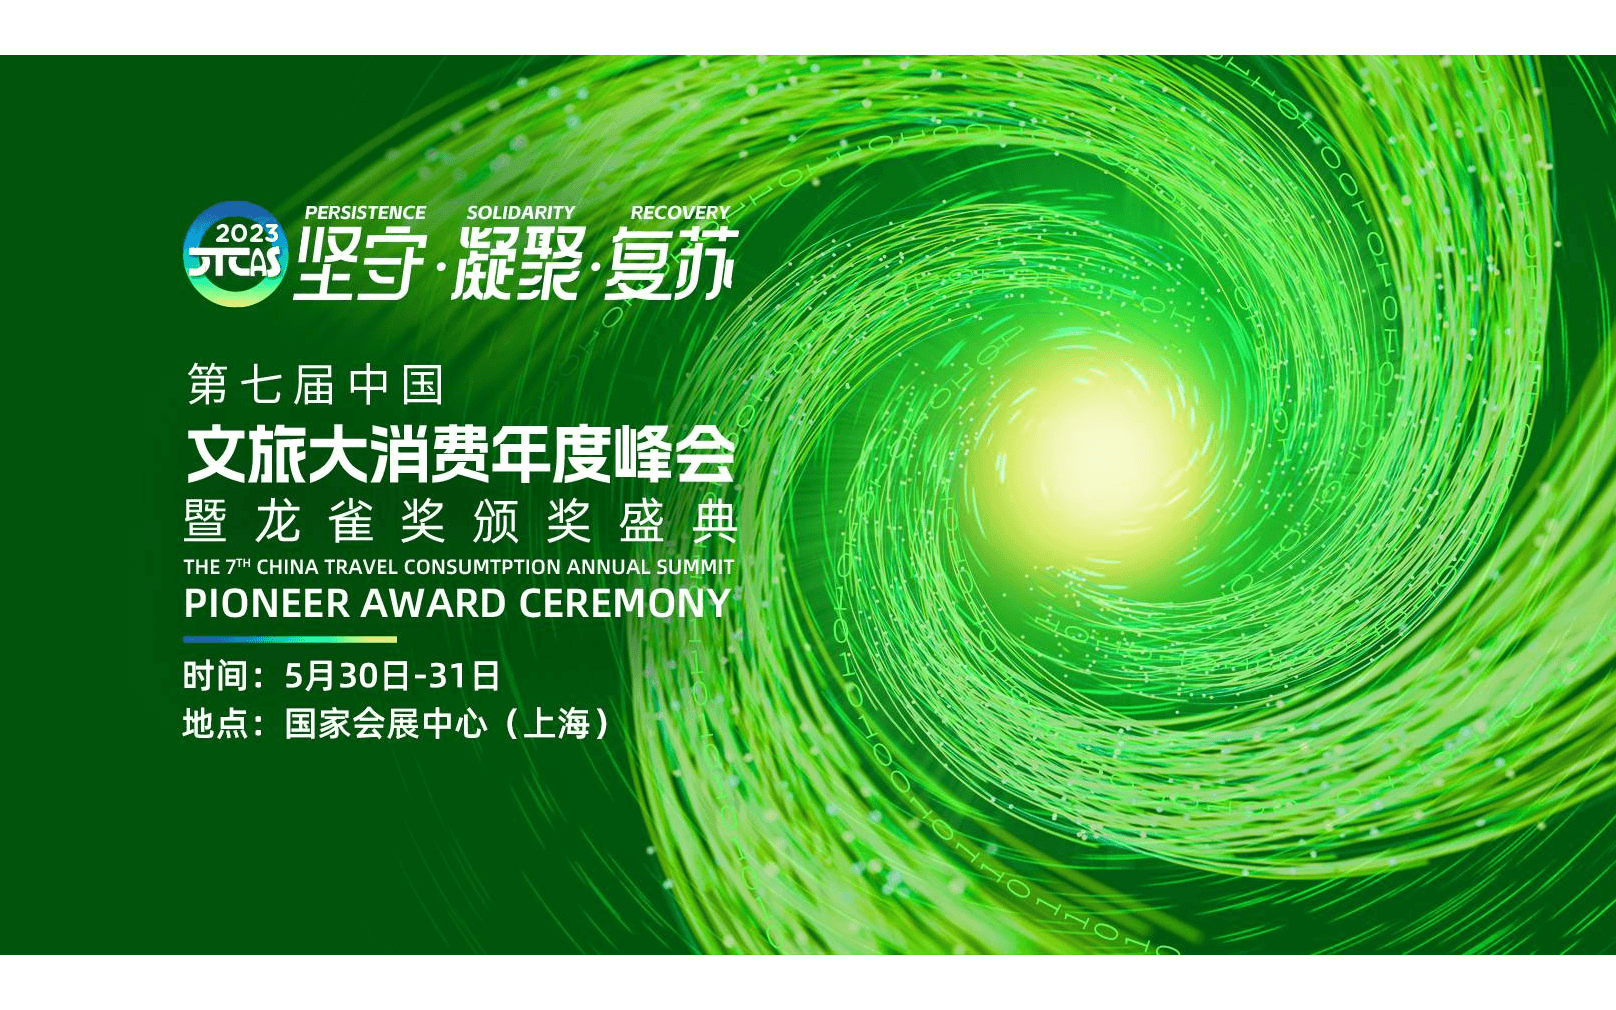 第七屆中國文旅大消費年度峰會暨龍雀獎